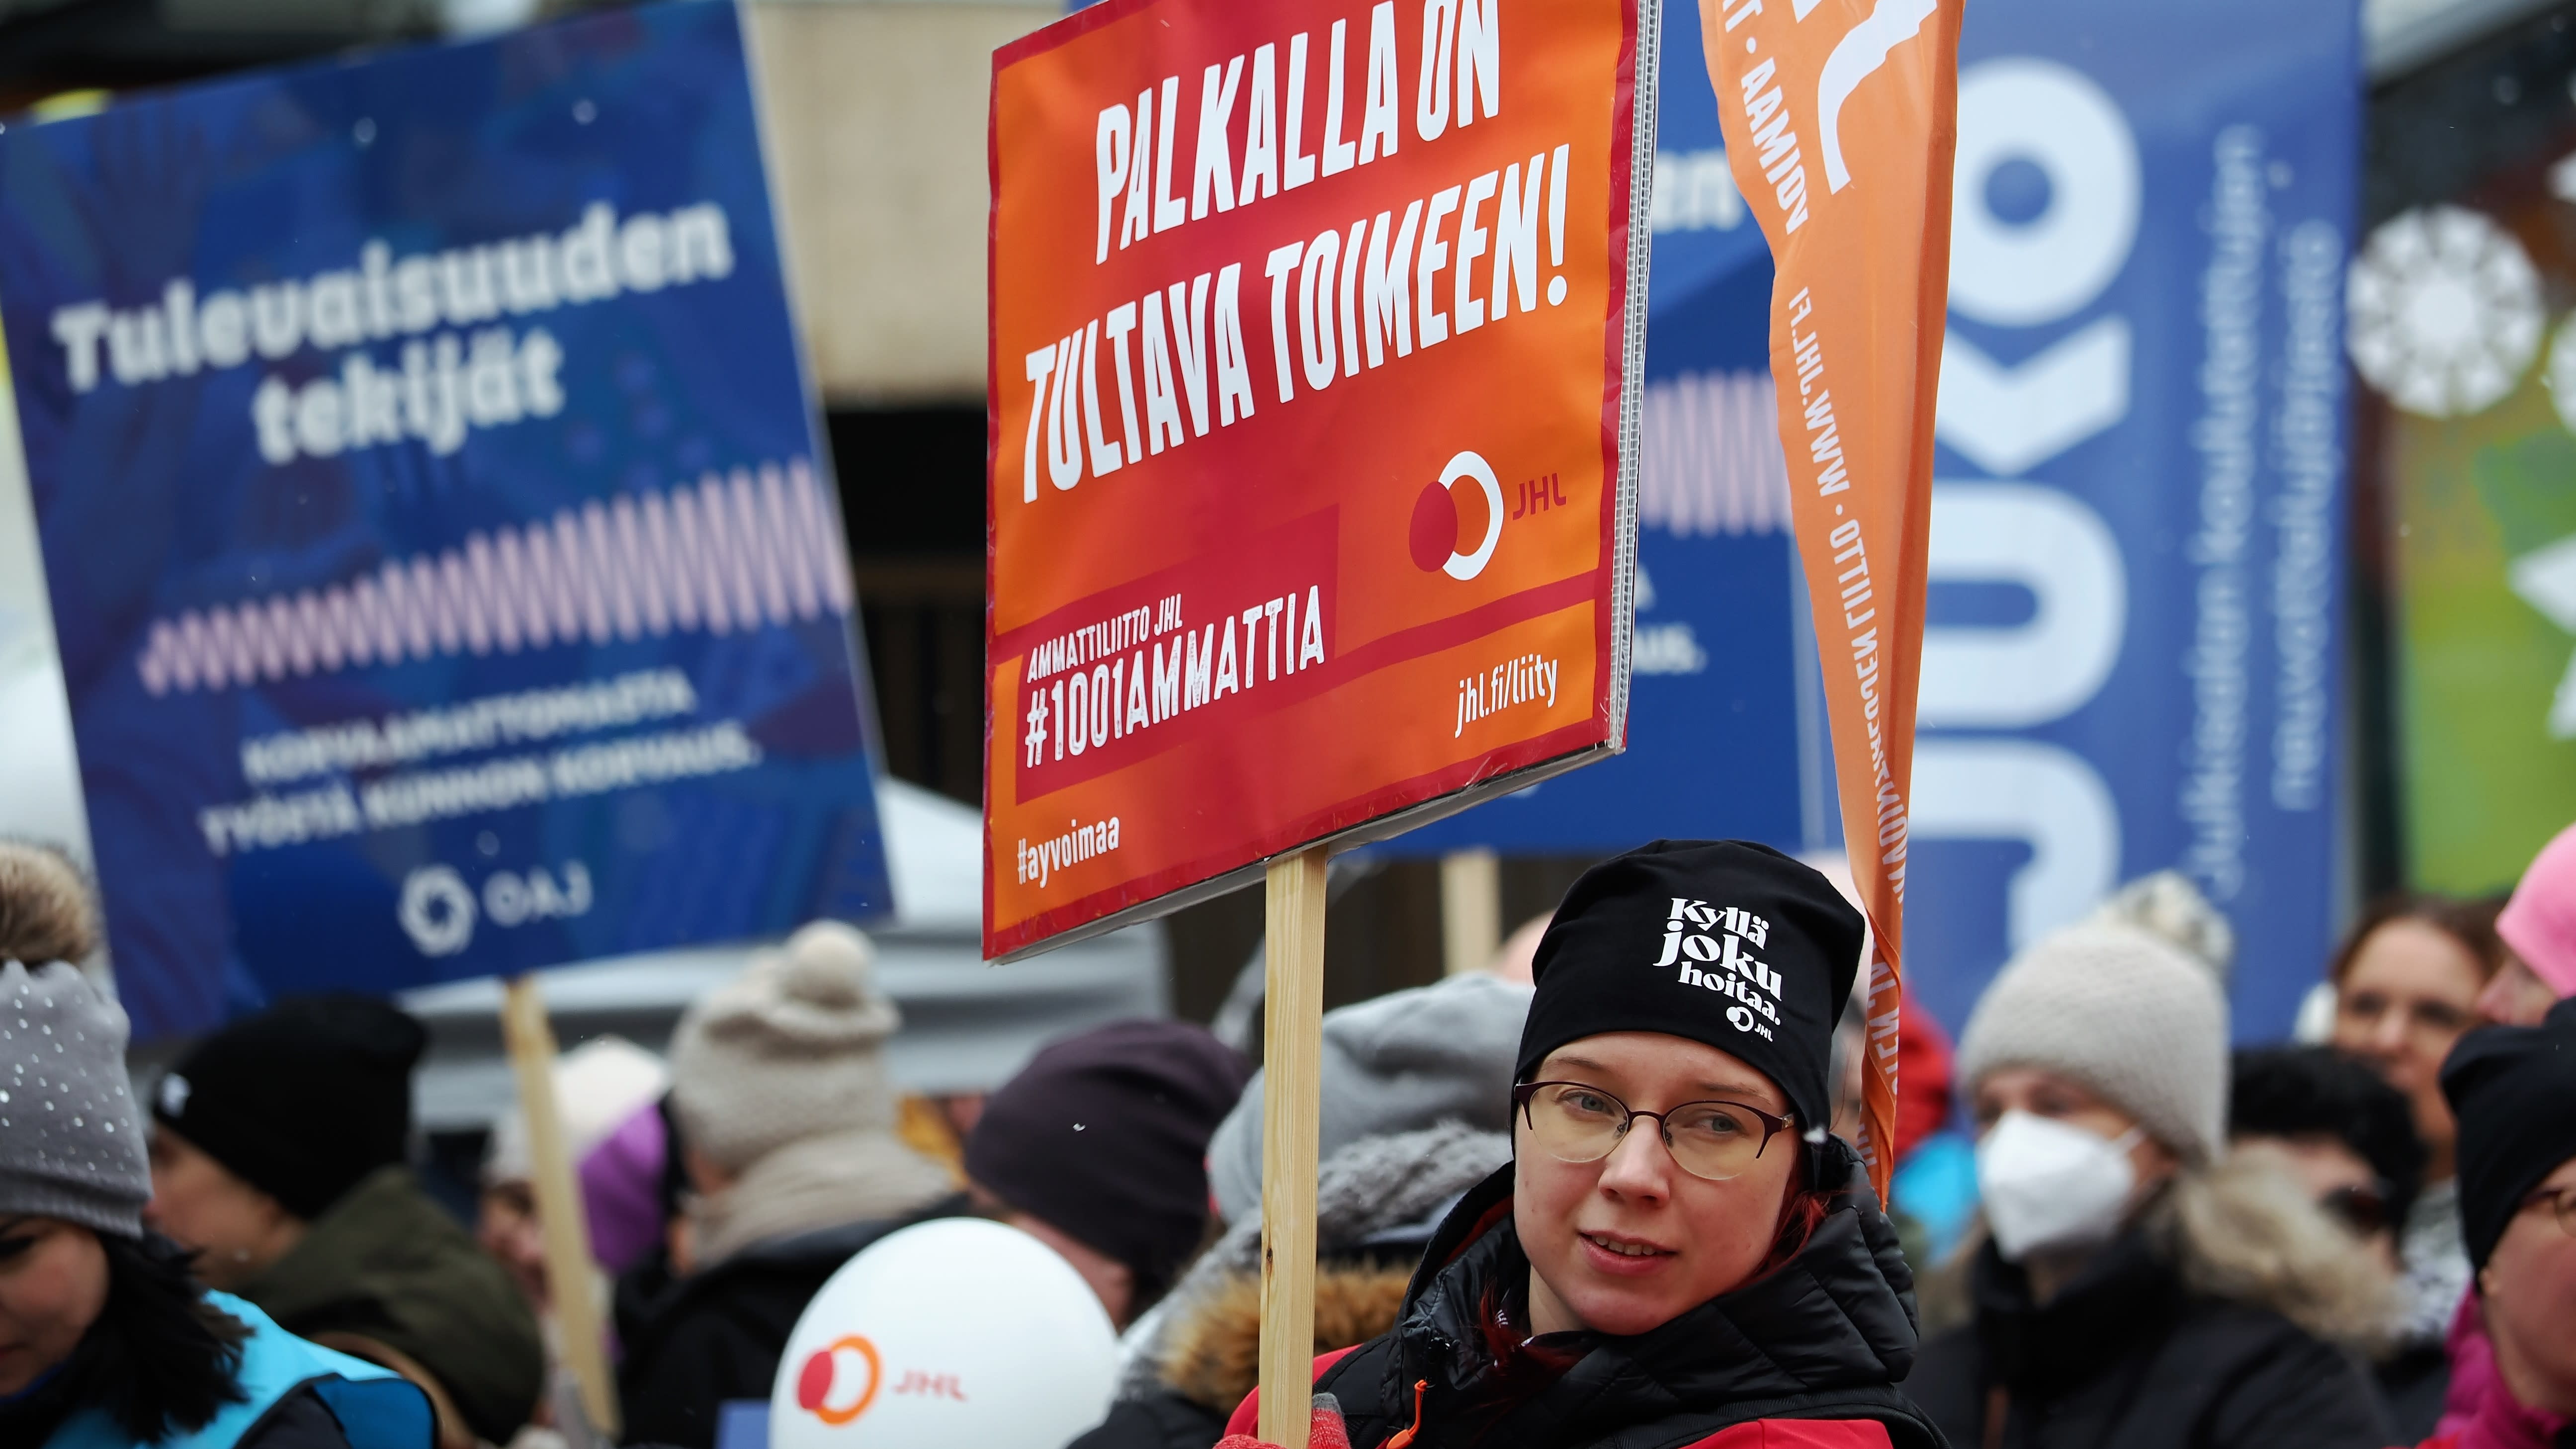 Schulschließungen werden erwartet, da sich die kommunalen Streiks auf mehrere finnische Städte ausweiten